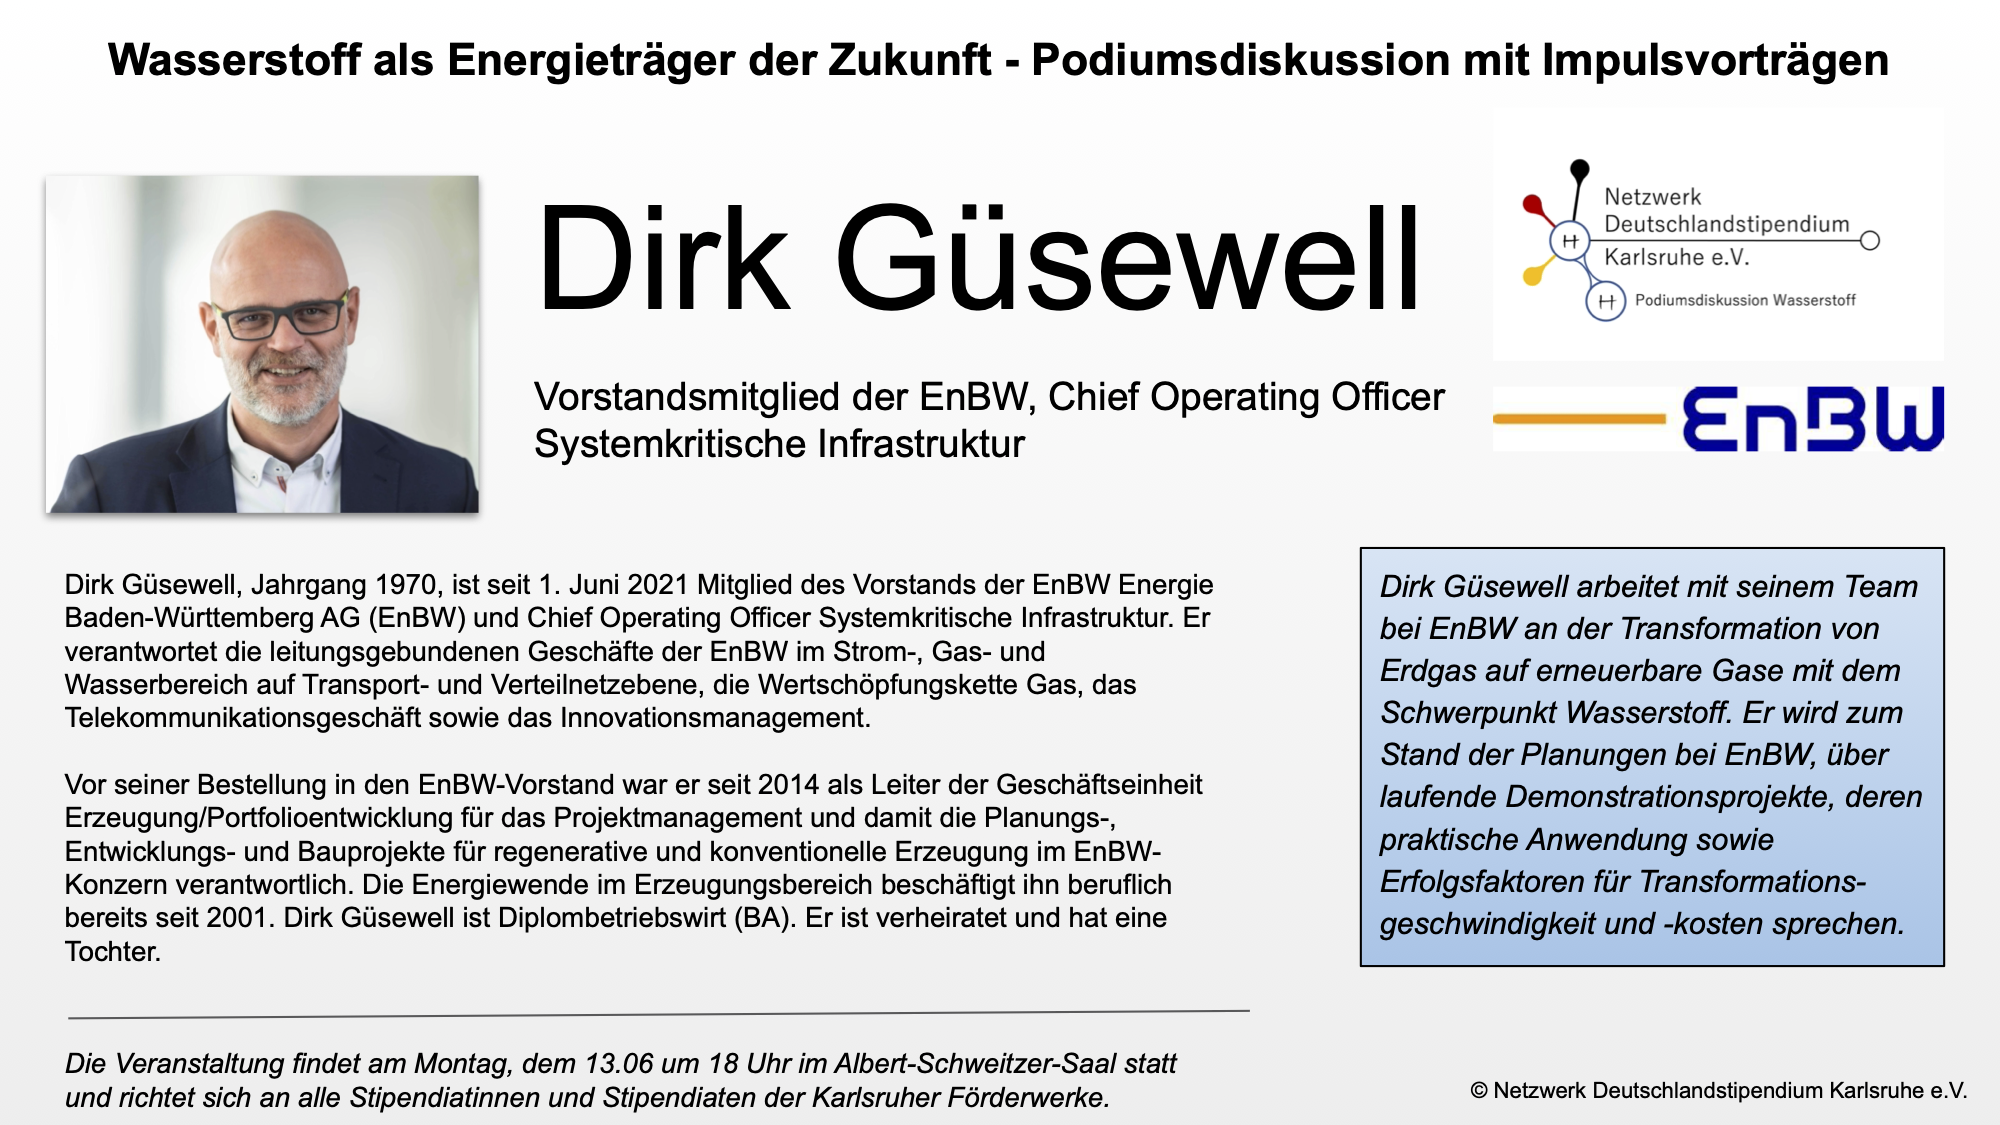 Podiumsdiskussion Wasserstoff - mit Herrn Güsewell (EnBW) ist der erste Referent bekannt